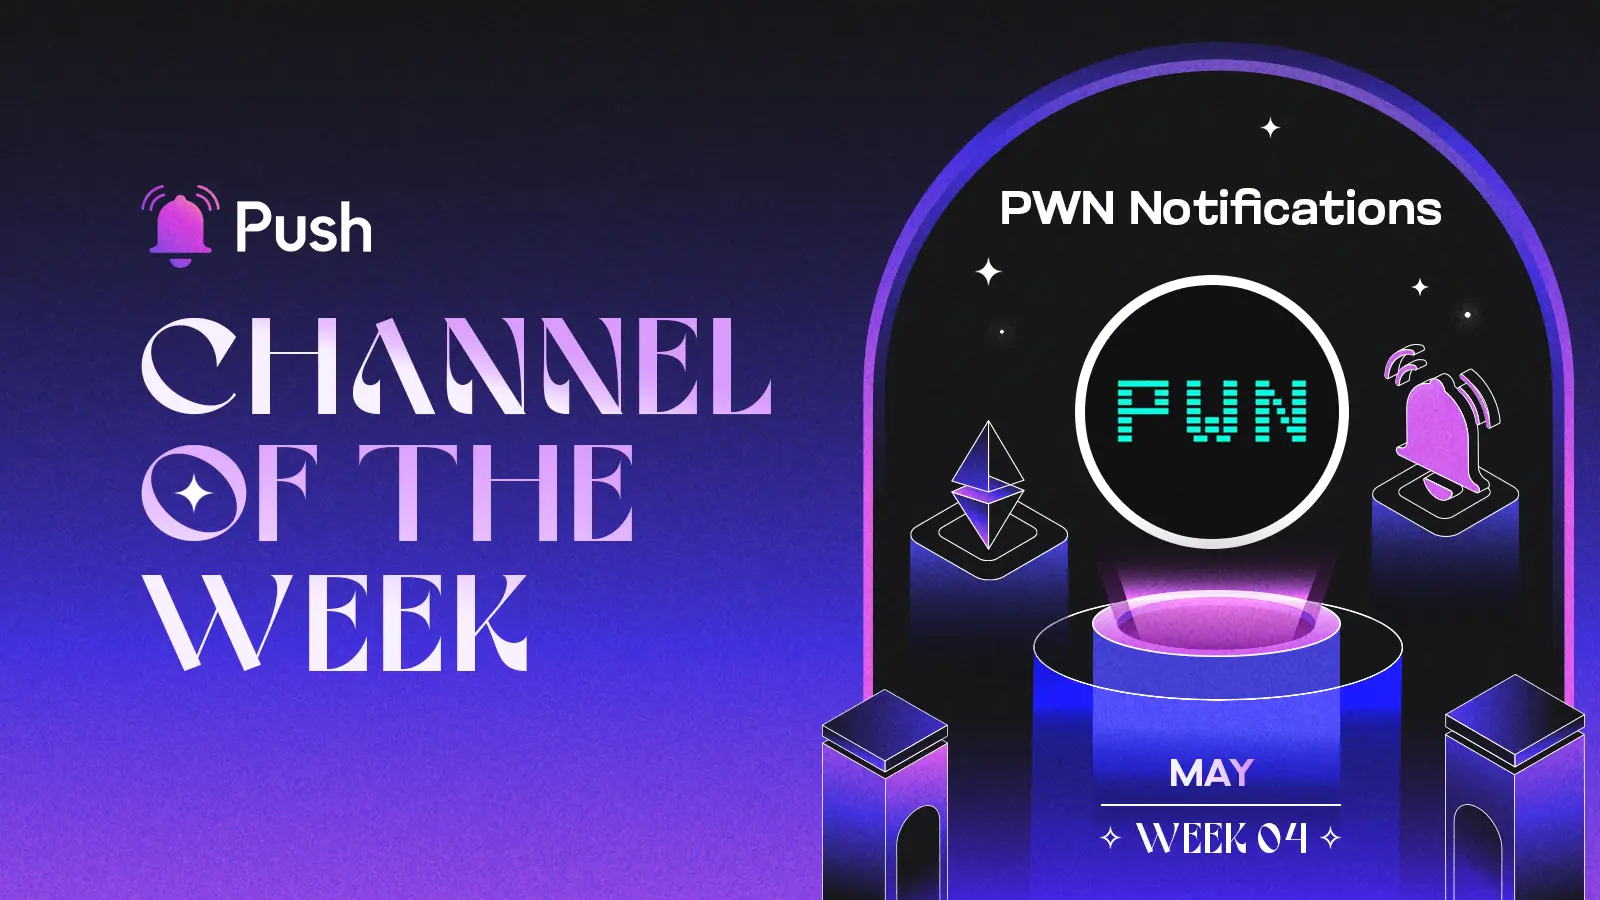 Banner celebrating PWN Notifications as May - week 4 channel of week